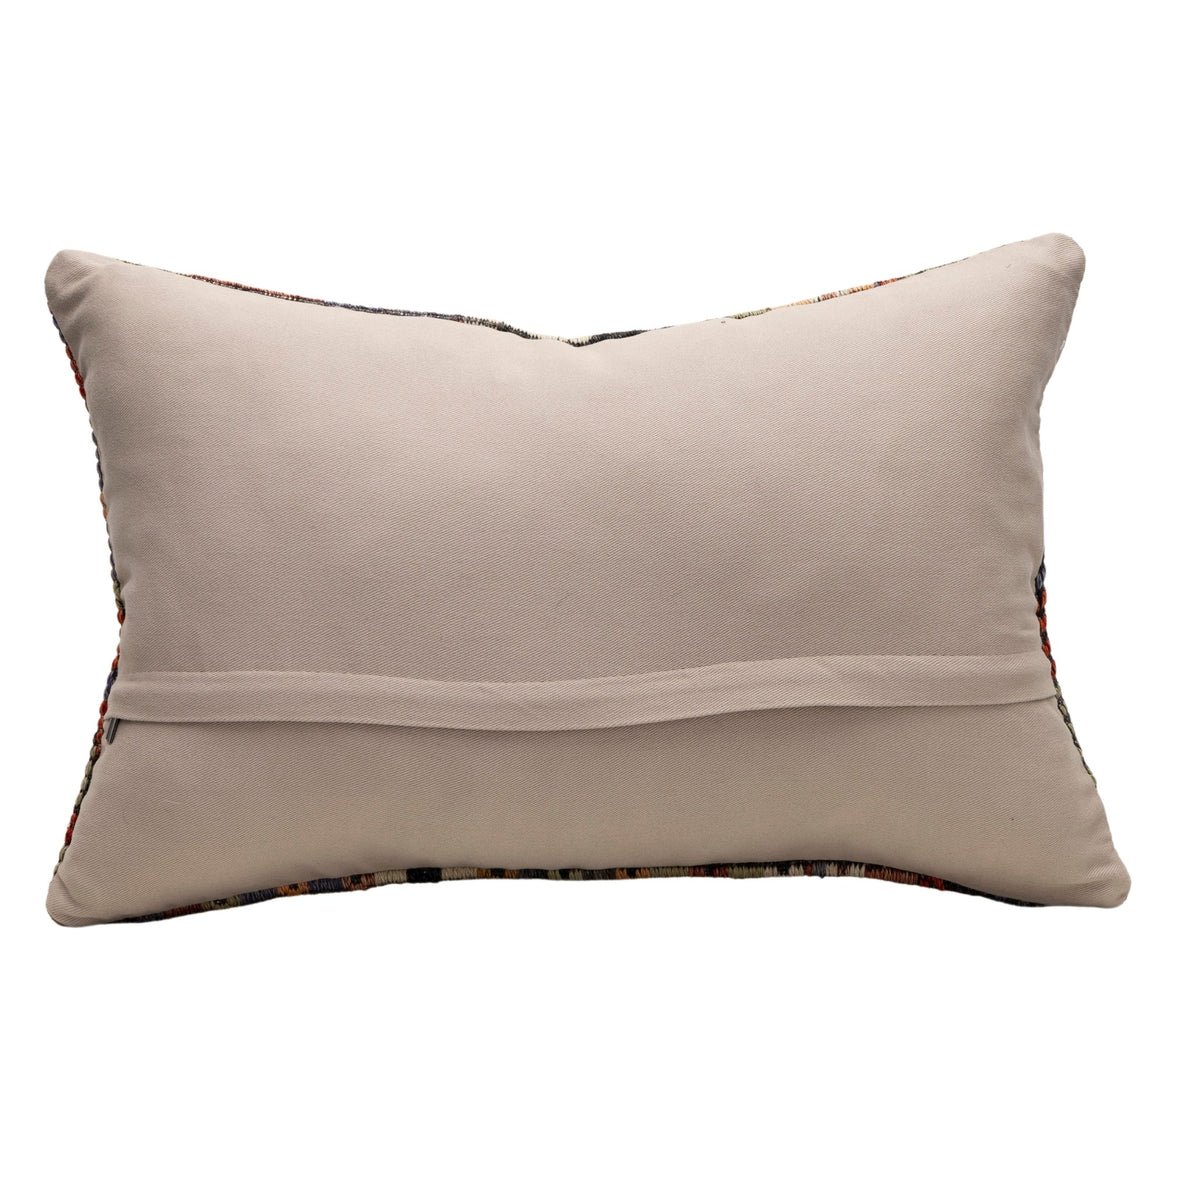 Handwoven Oriental Kilim Throw Pillow Case 16" x 24"